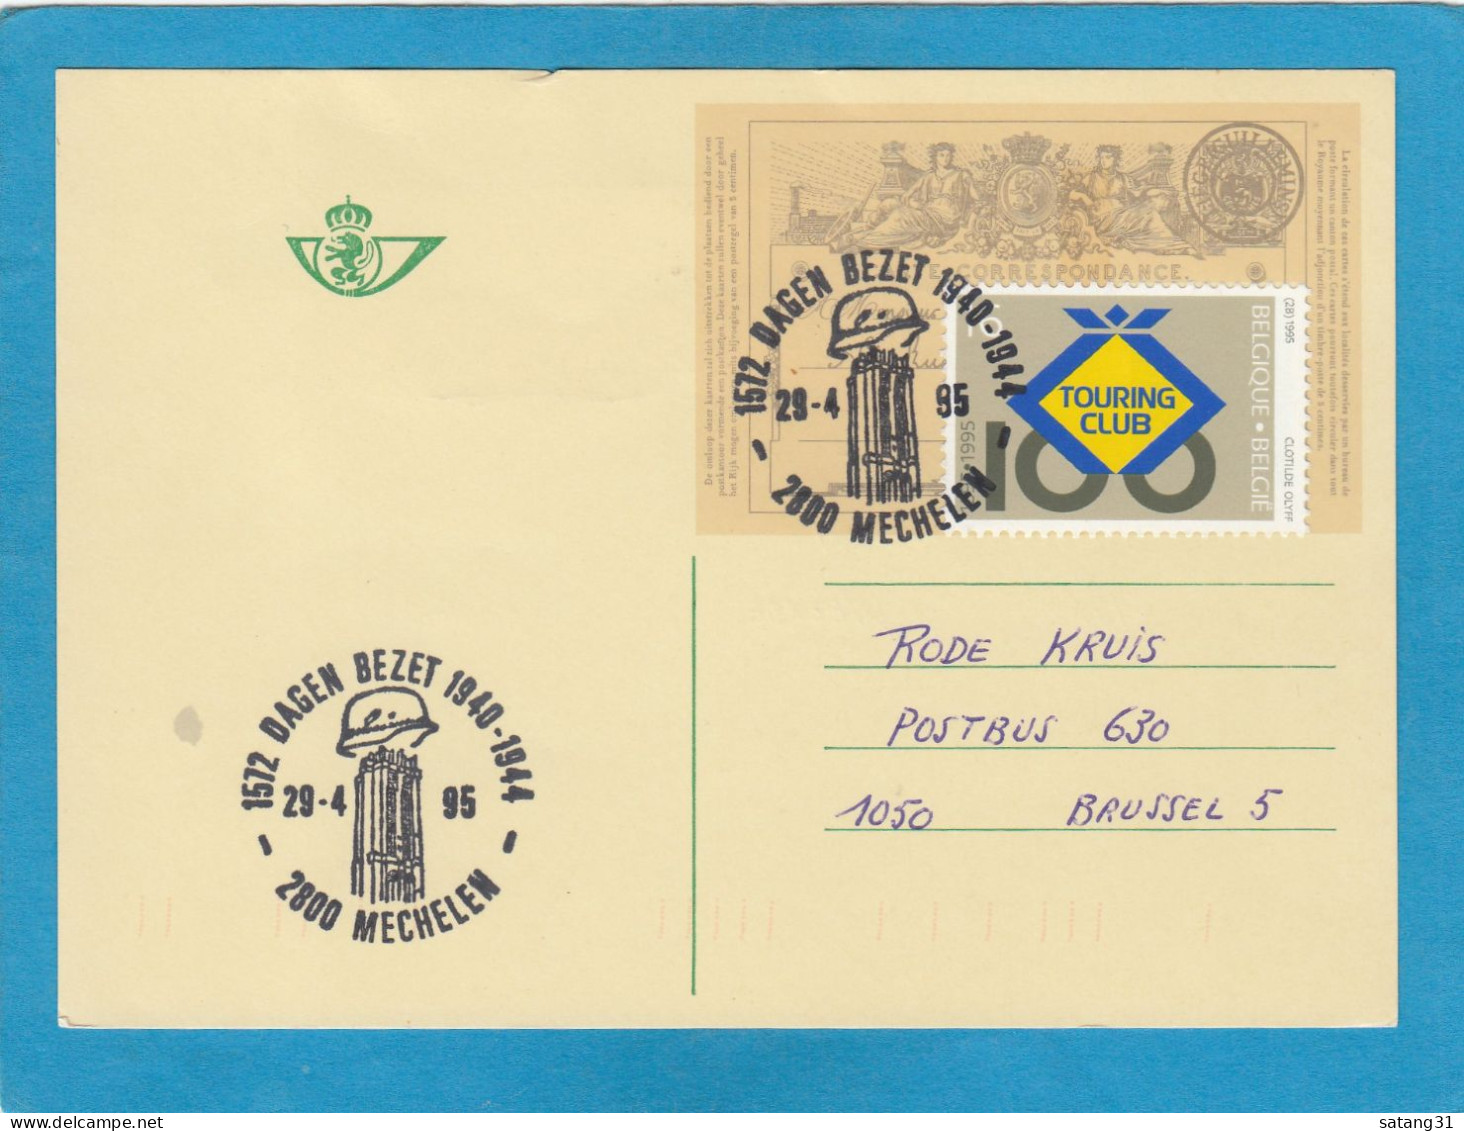 ENTIER POSTAL AVEC TIMBRE "TOURING CLUB" ET CACHET "1572 DAGEN BEZET 1940-1944 MECHELEN 29-4-95". - Postkarten 1951-..